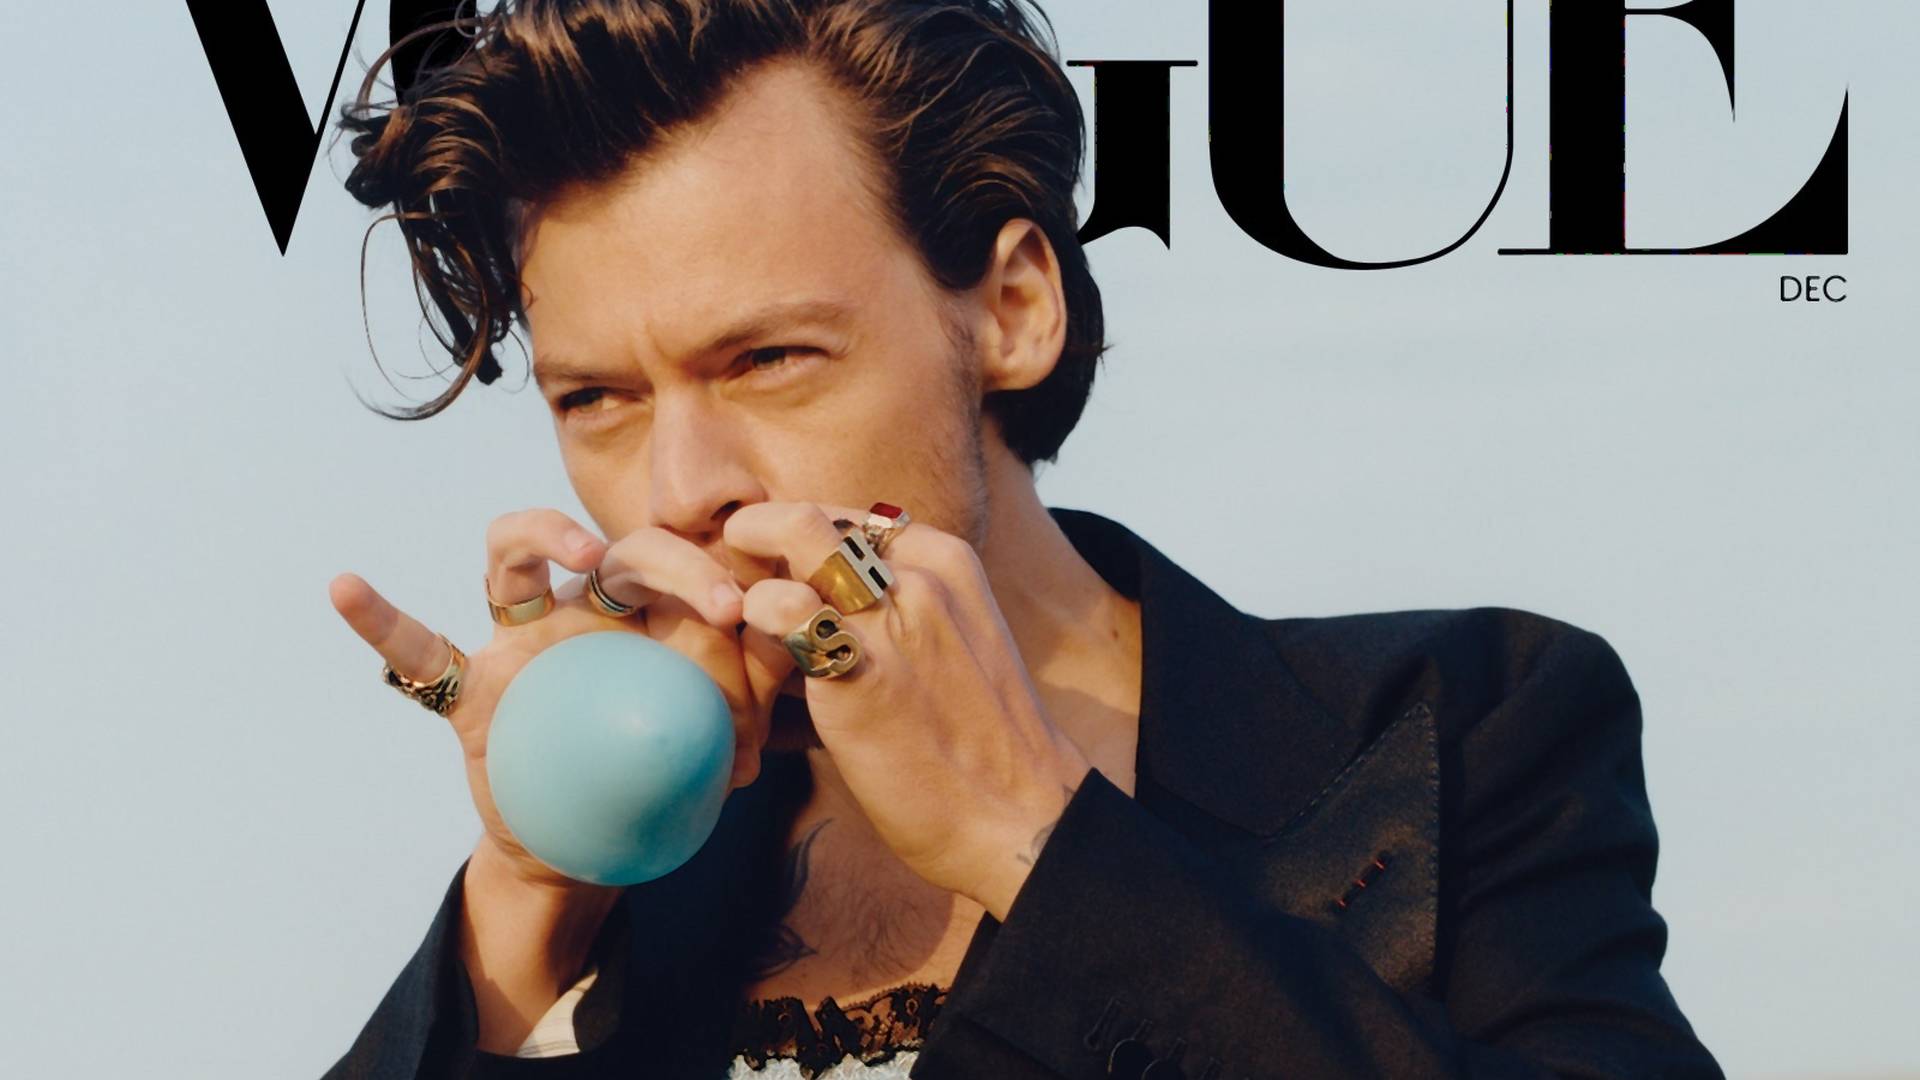 Harry Styles pierwszym mężczyzną na okładce amerykańskiego "Vogue'a". Co chciał przekazać zakładając sukienkę?